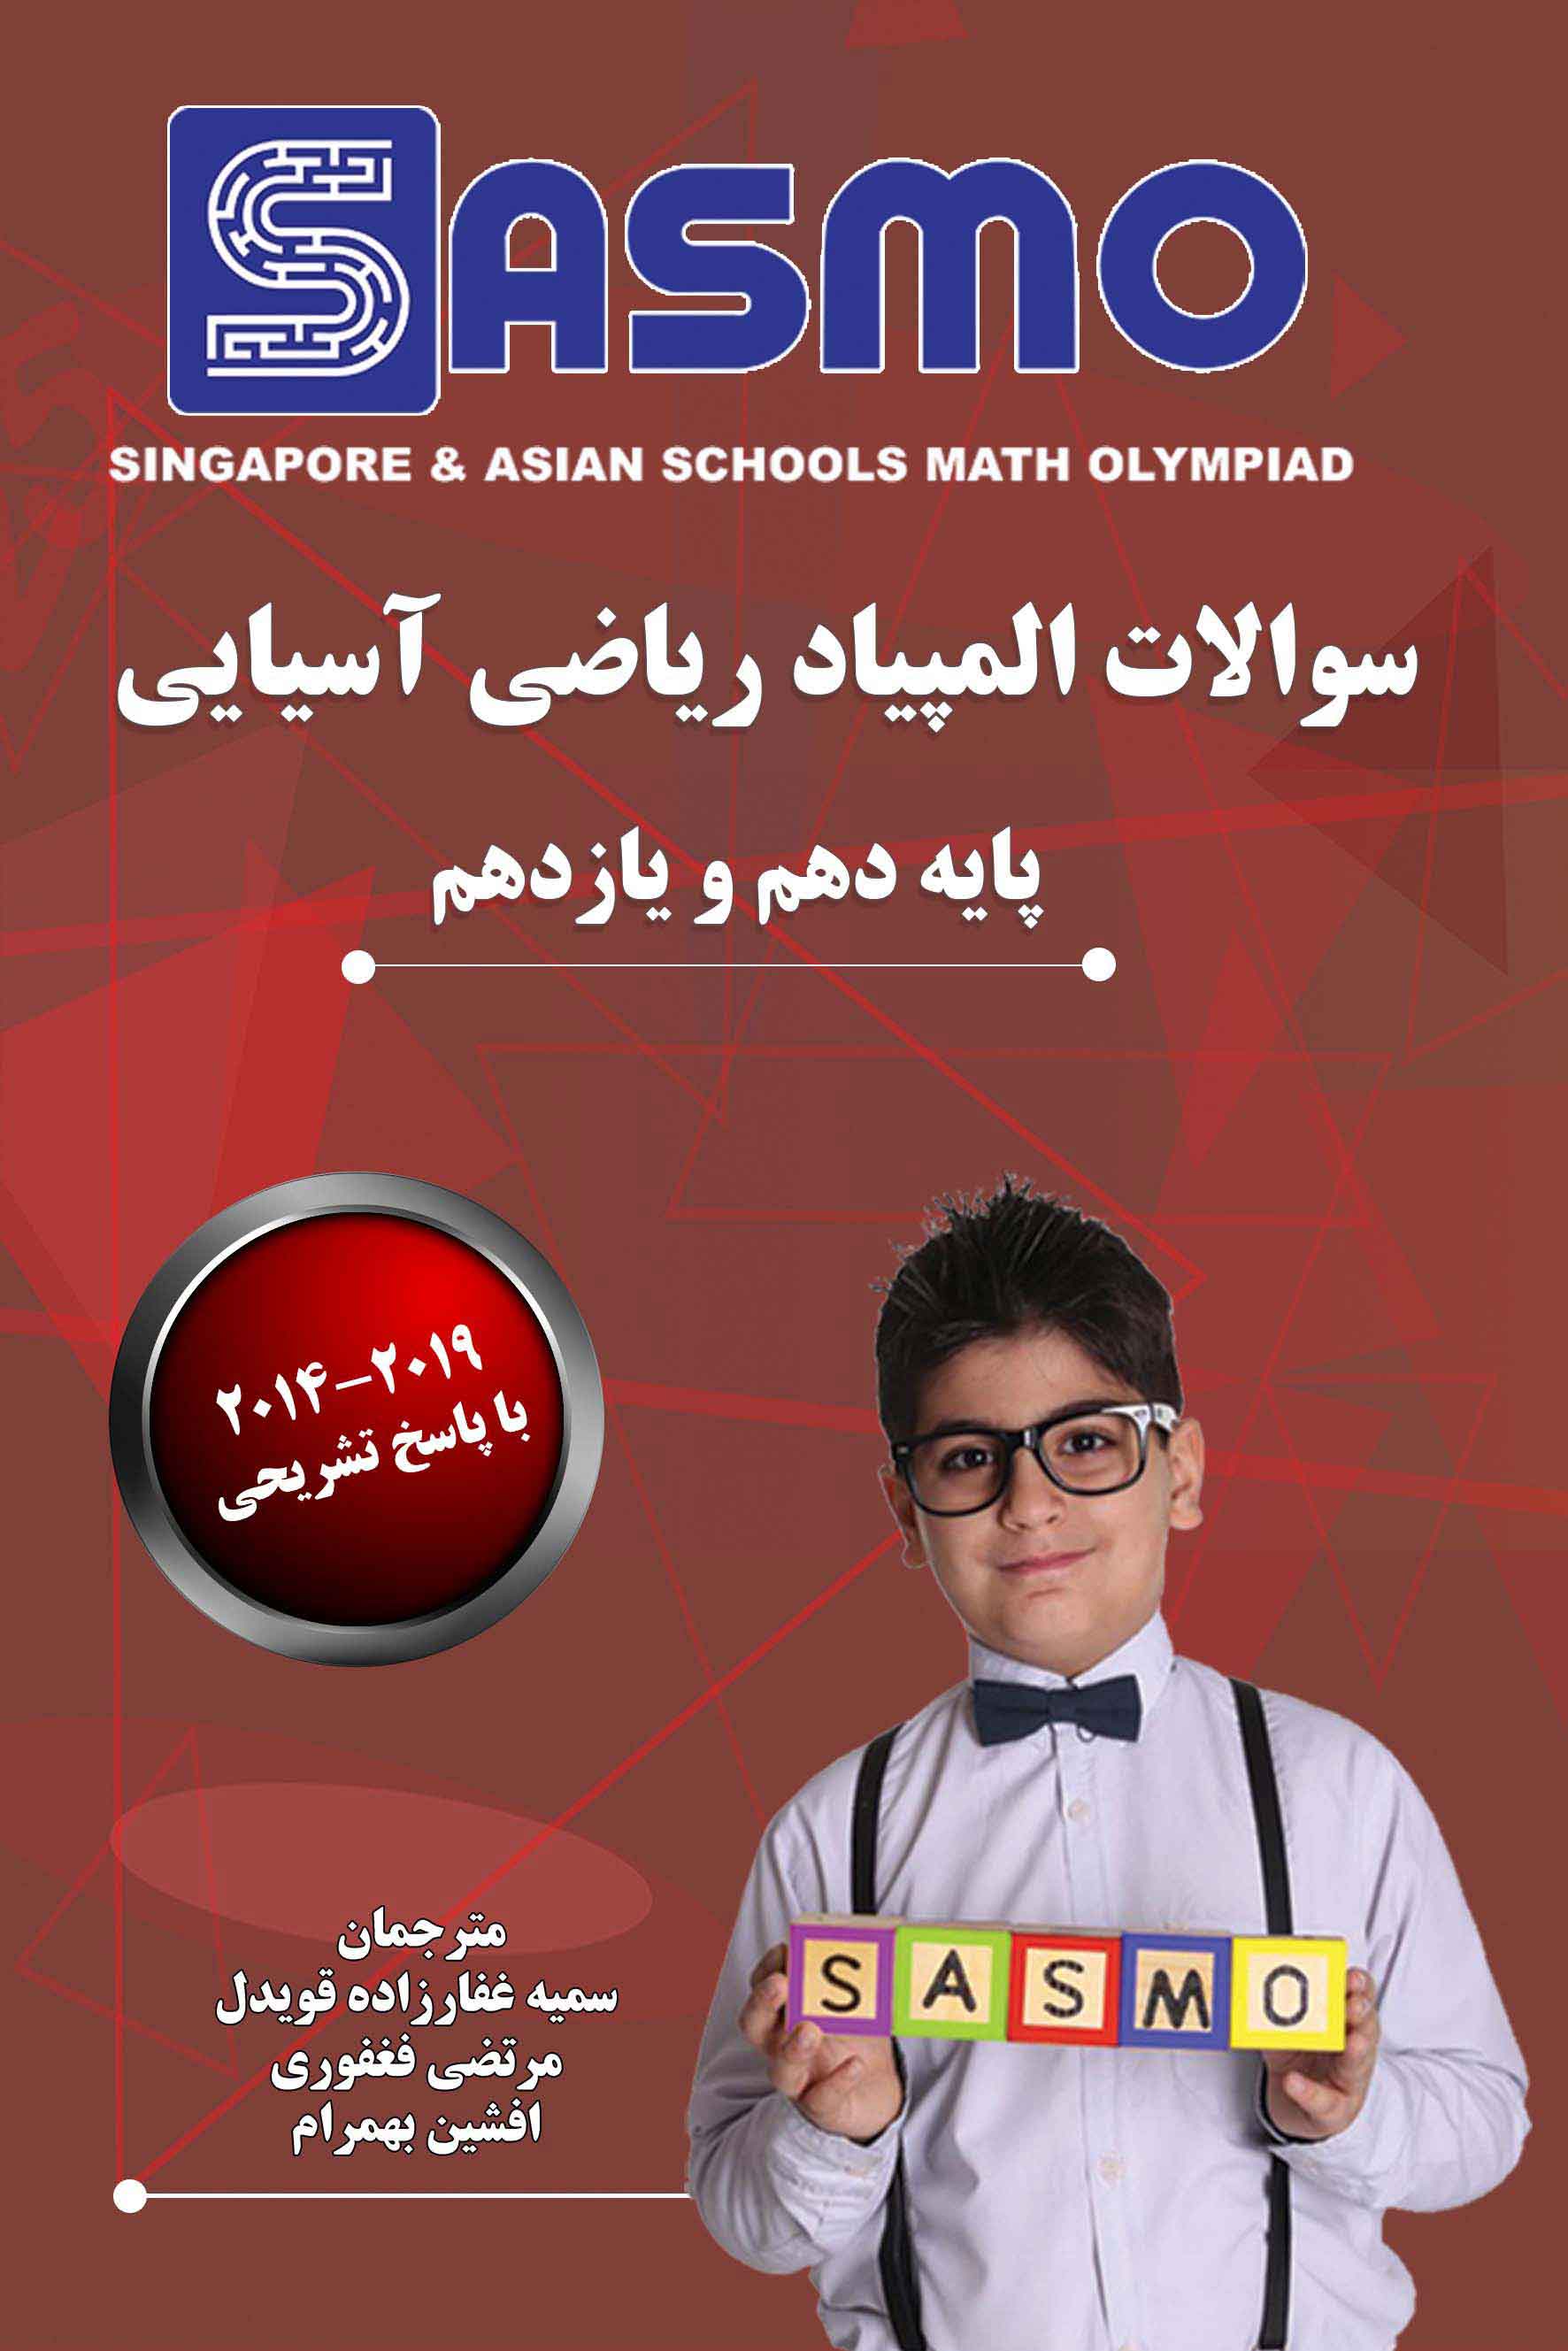 سوالات المپیاد ریاضی آسیایی ساسمو - 2019-2014 - پایه دهم و یازدهم